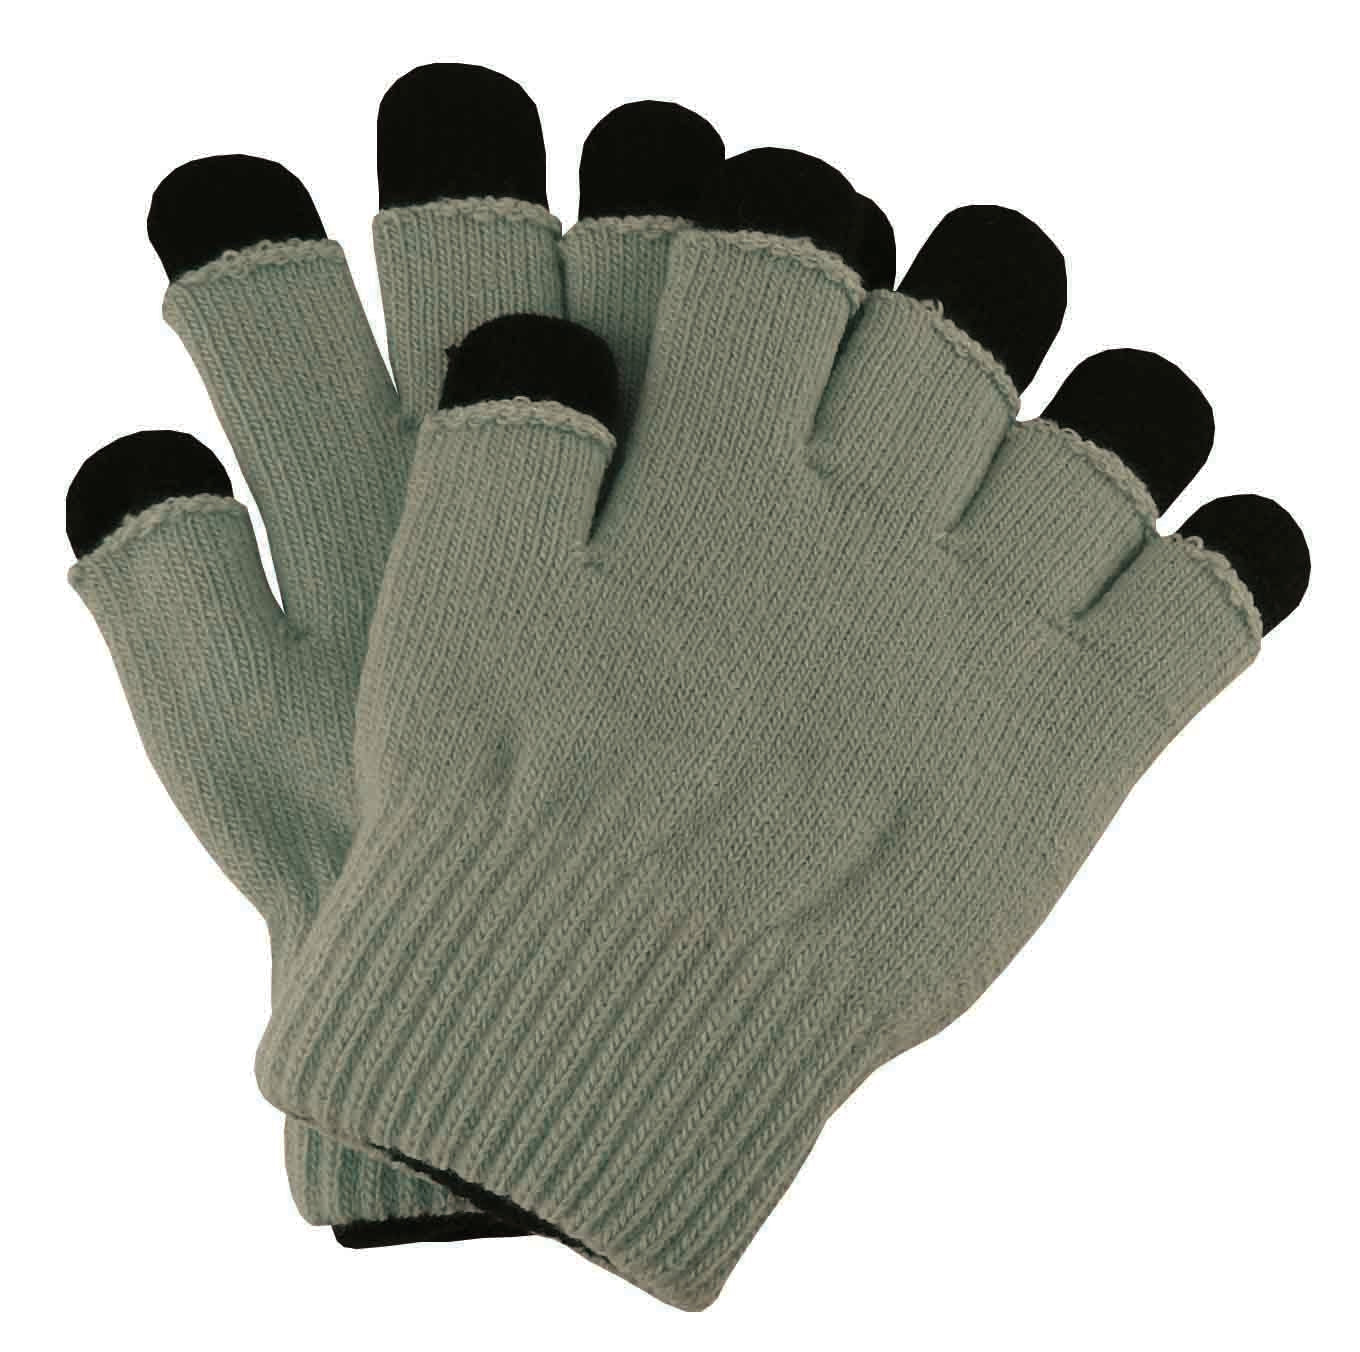 Two in One Finger/Fingerless Gloves - Black/Grey